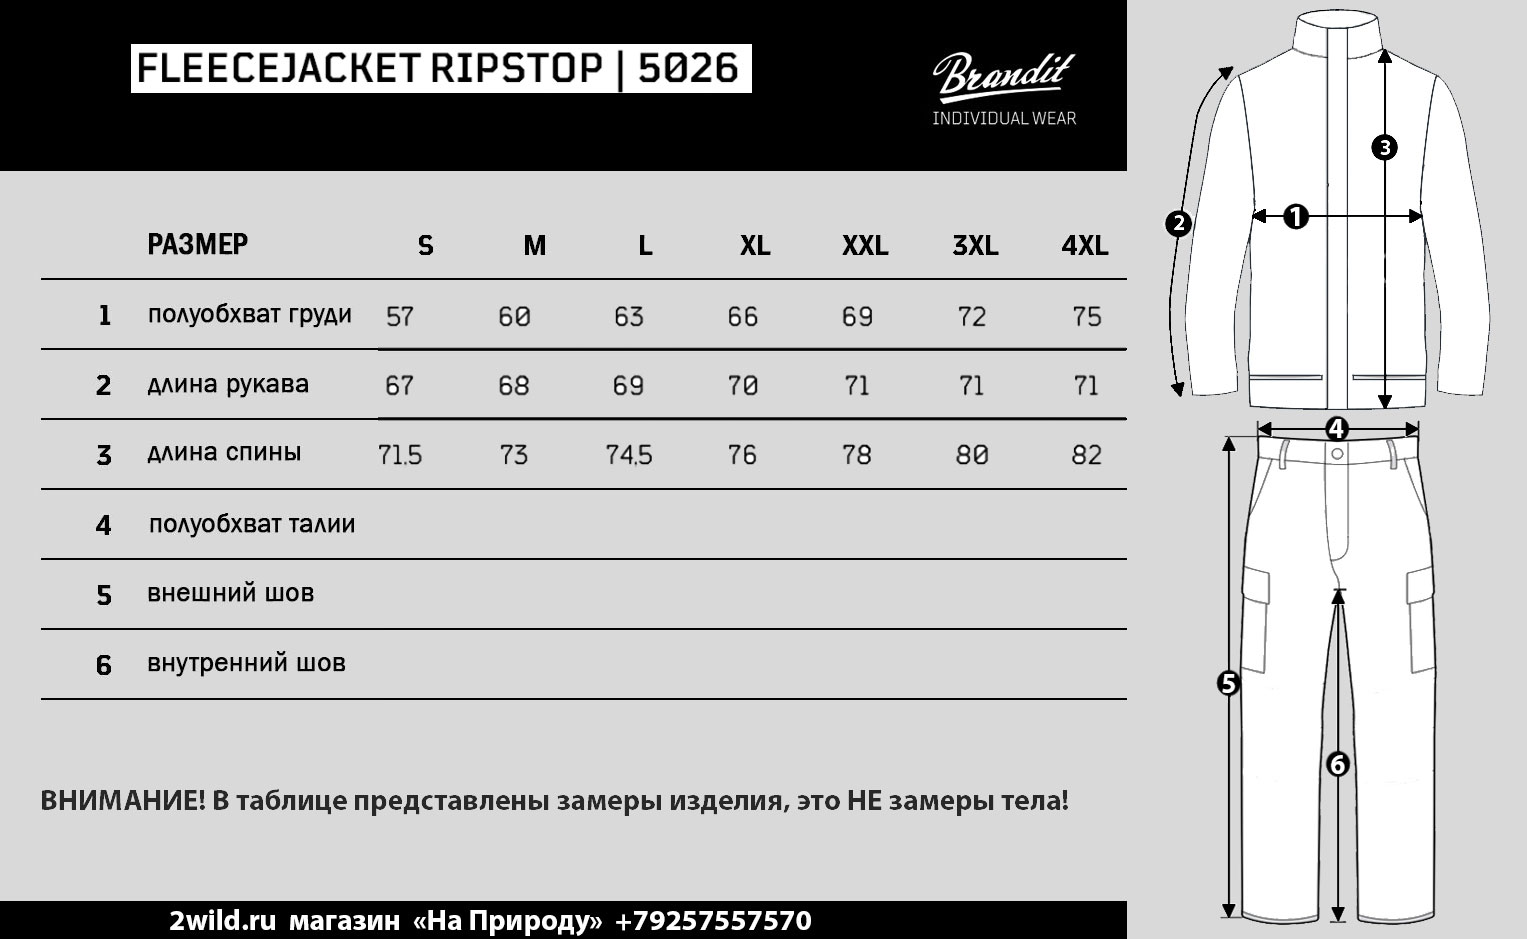 Куртка флисовая Fleecejacket Ripstop Brandit размеры